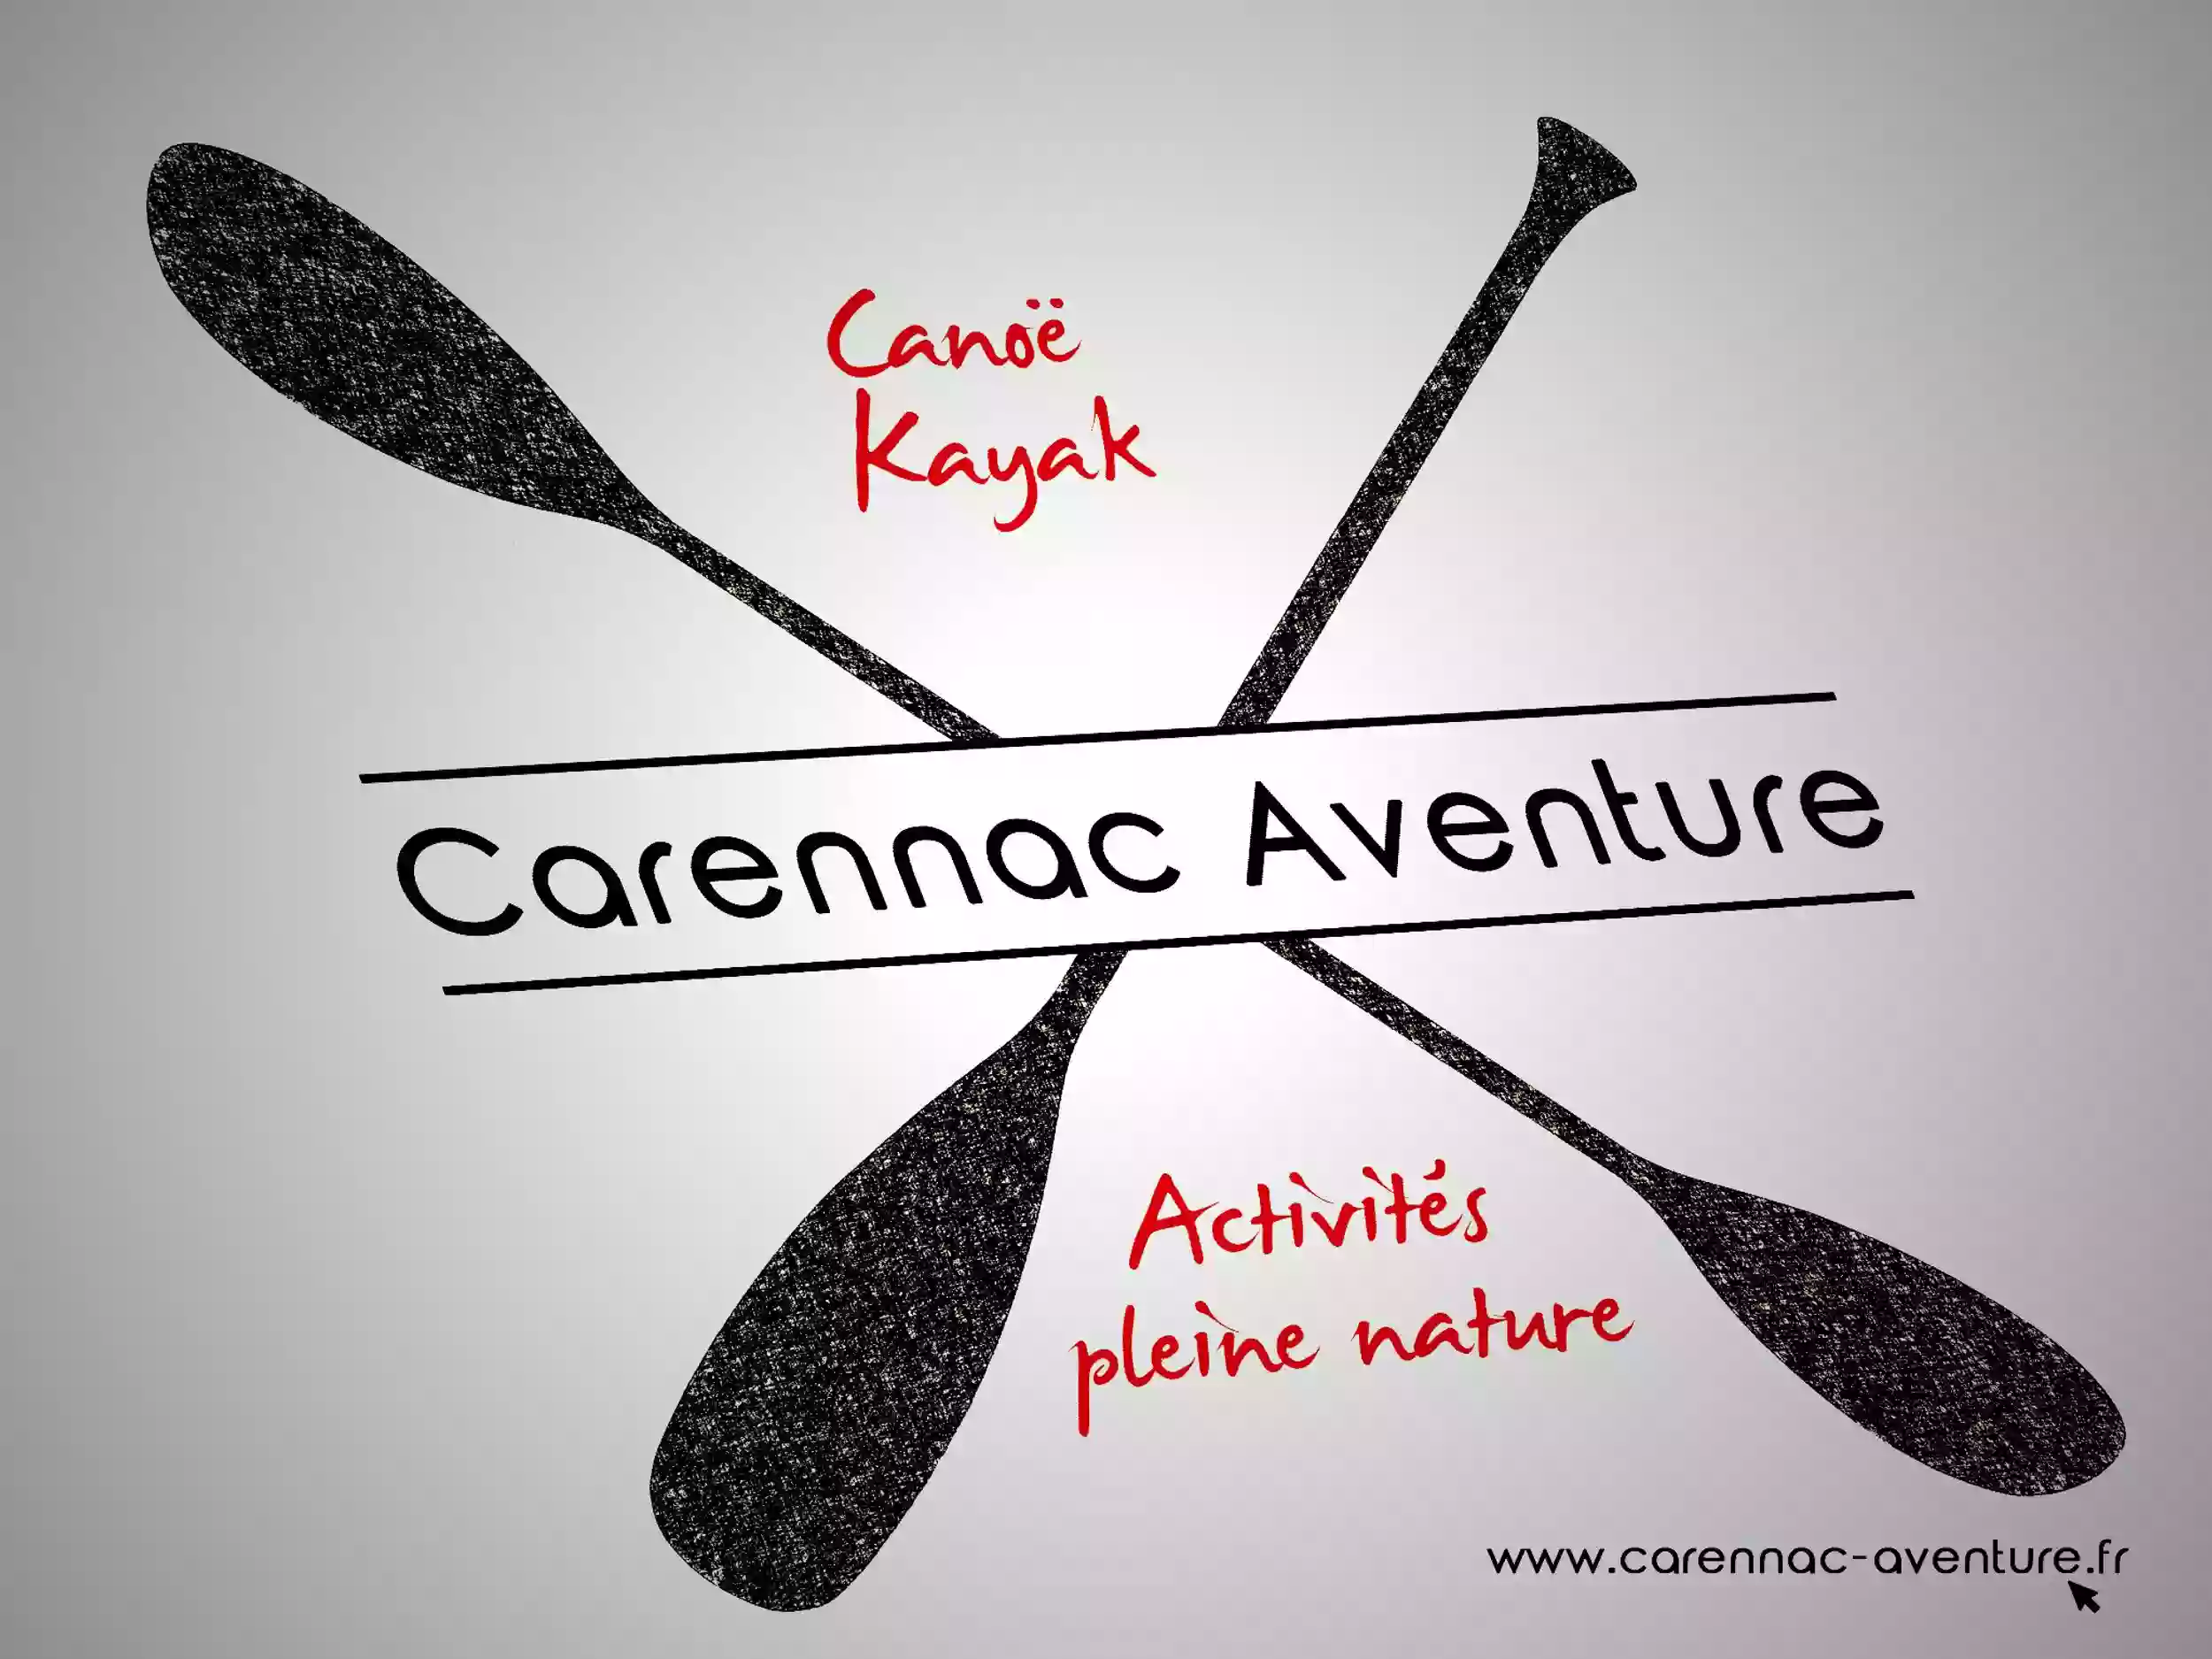 Carennac Aventure, location de Canoë, Kayak et Stand Up Paddle sur la Dordogne